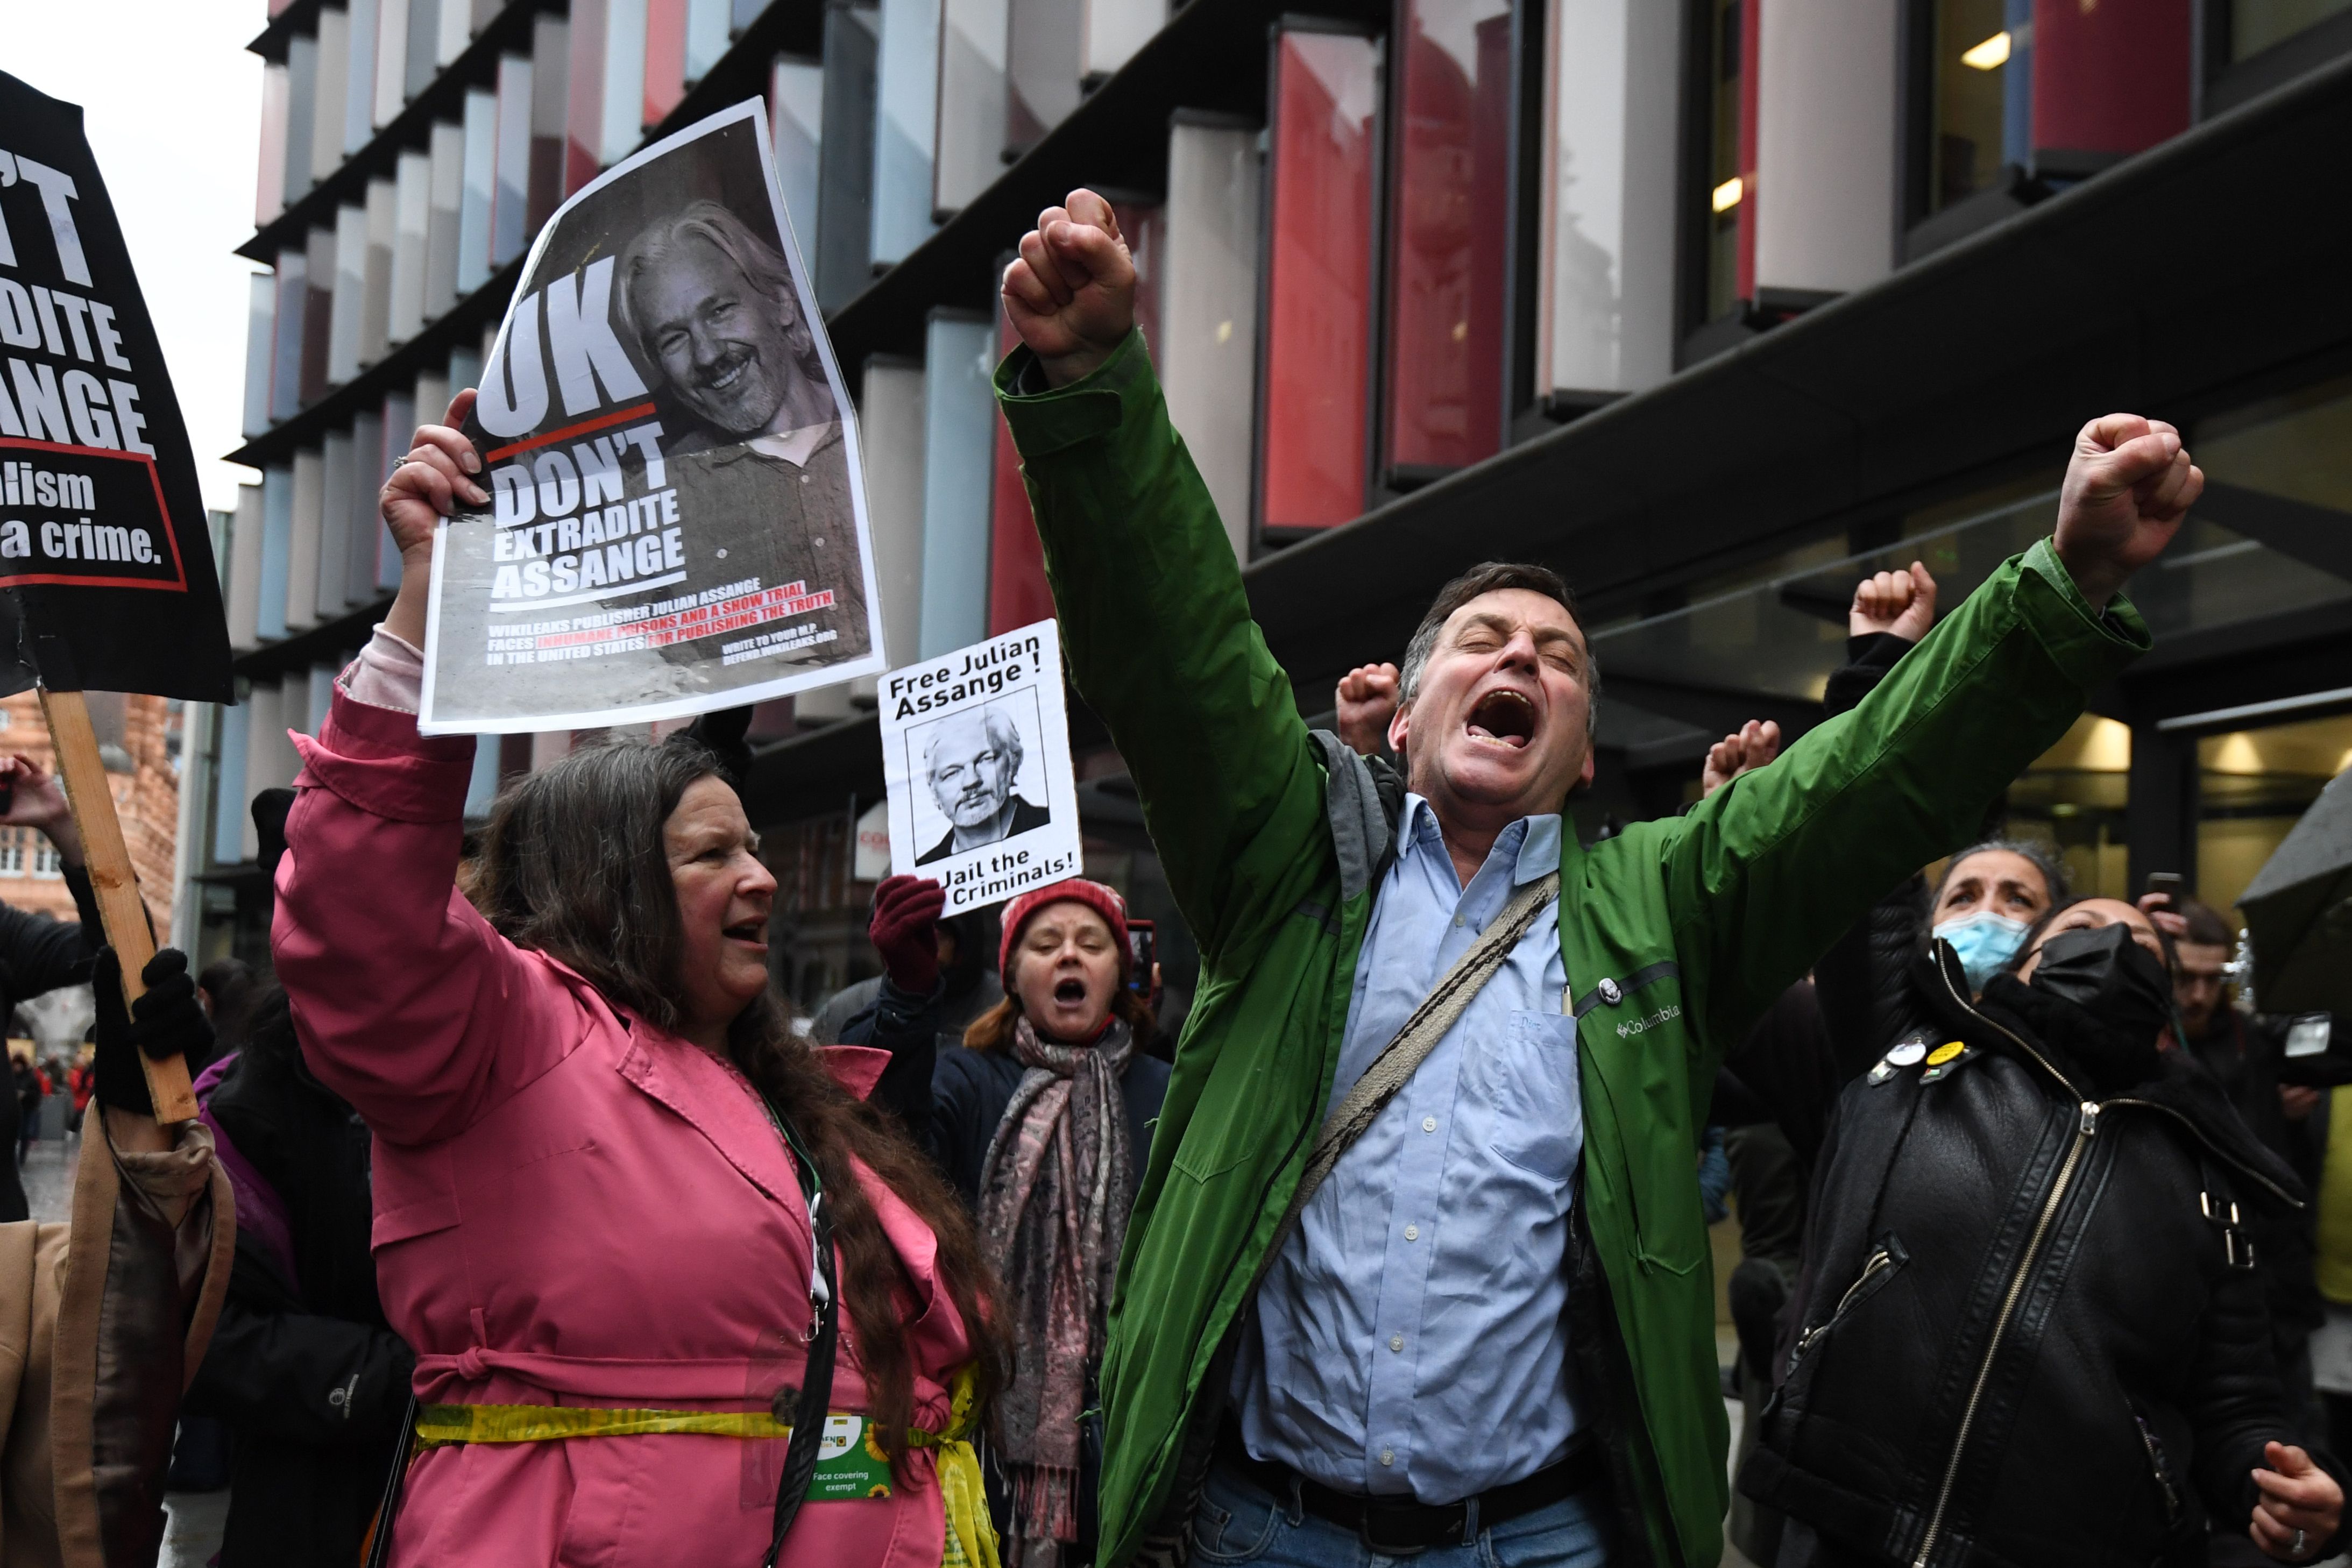 영국 런던의 중앙형사법원이 4일(현지시간) 위키리크스 설립자 줄리언 어산지의 미국 송환을 불허하는 판결을 내리자 법원 앞에 모여 있던 지지자들이 두 손을 치켜들며 기뻐하고 있다. 런던 AFP 연합뉴스